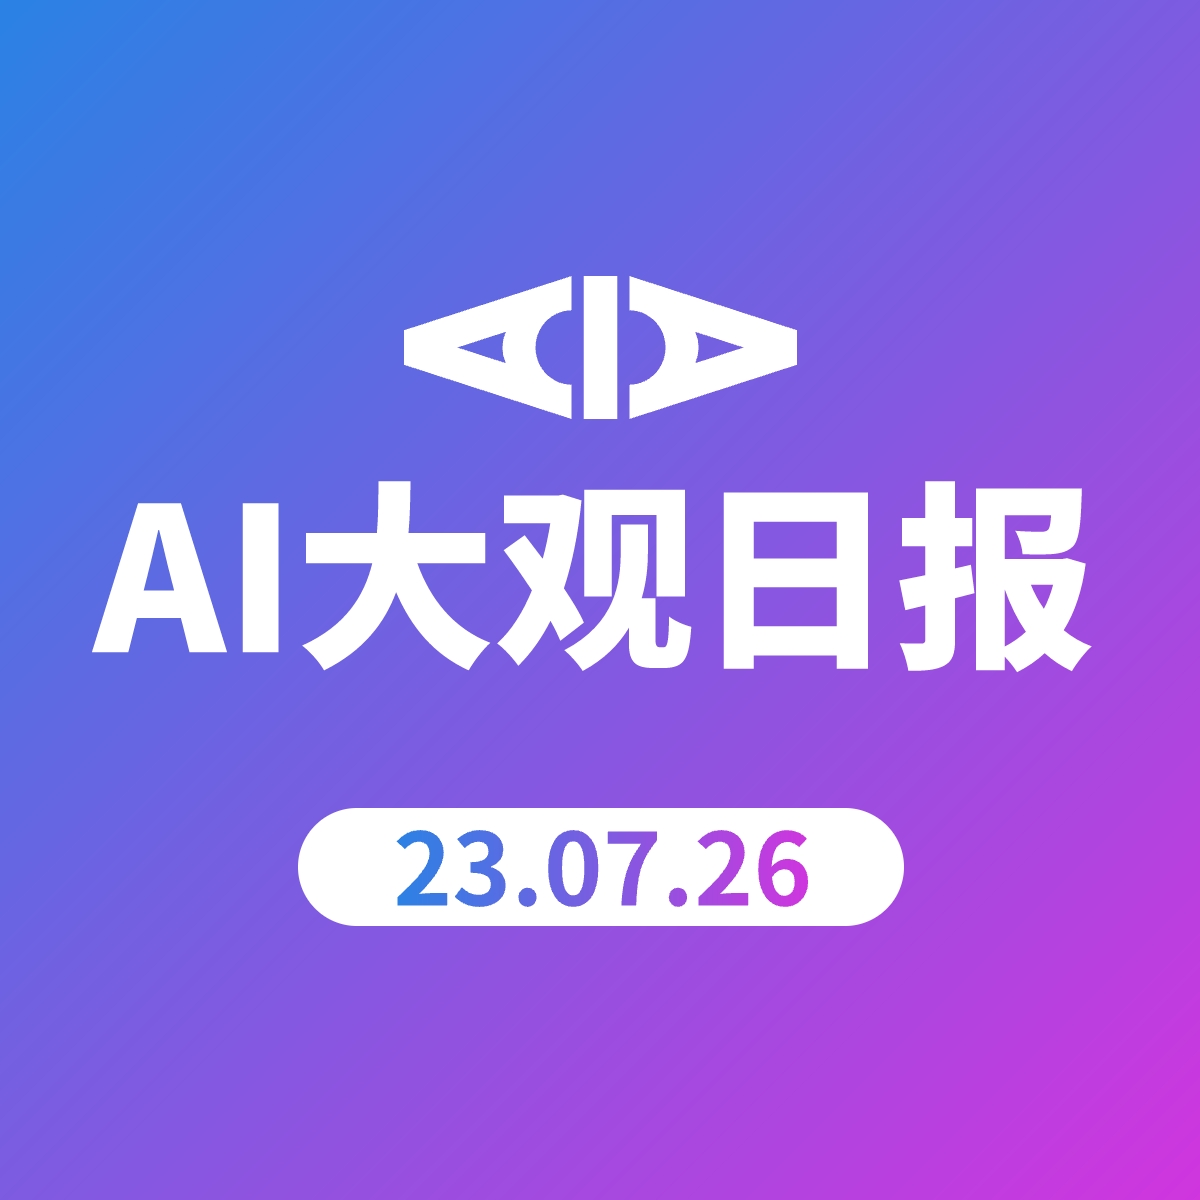 AI大观日报 | 23.07.26